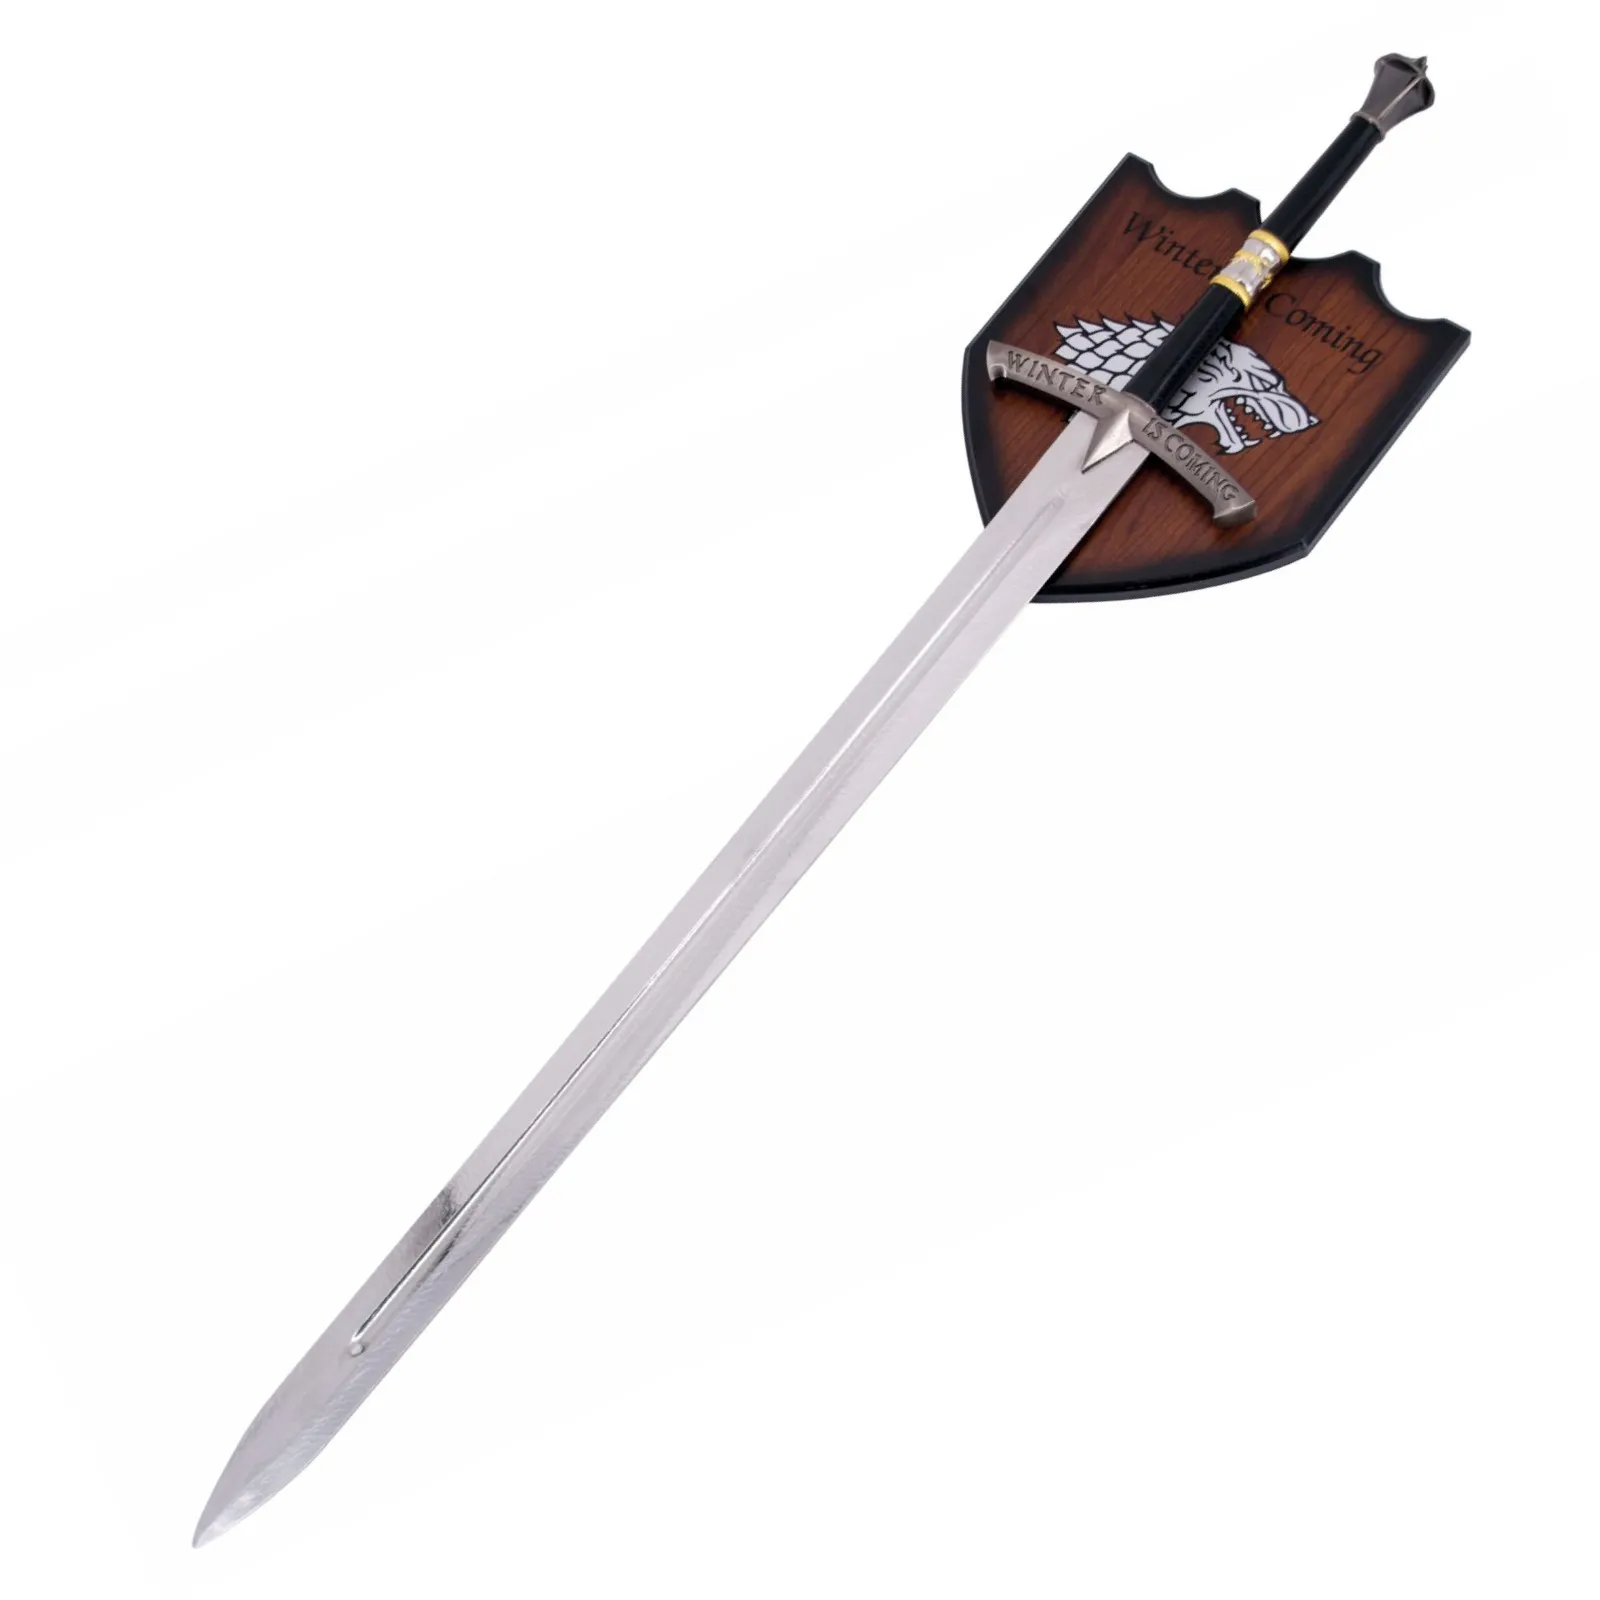 Miecz Średniowieczny z tarczą - Miecz Neda Starka 